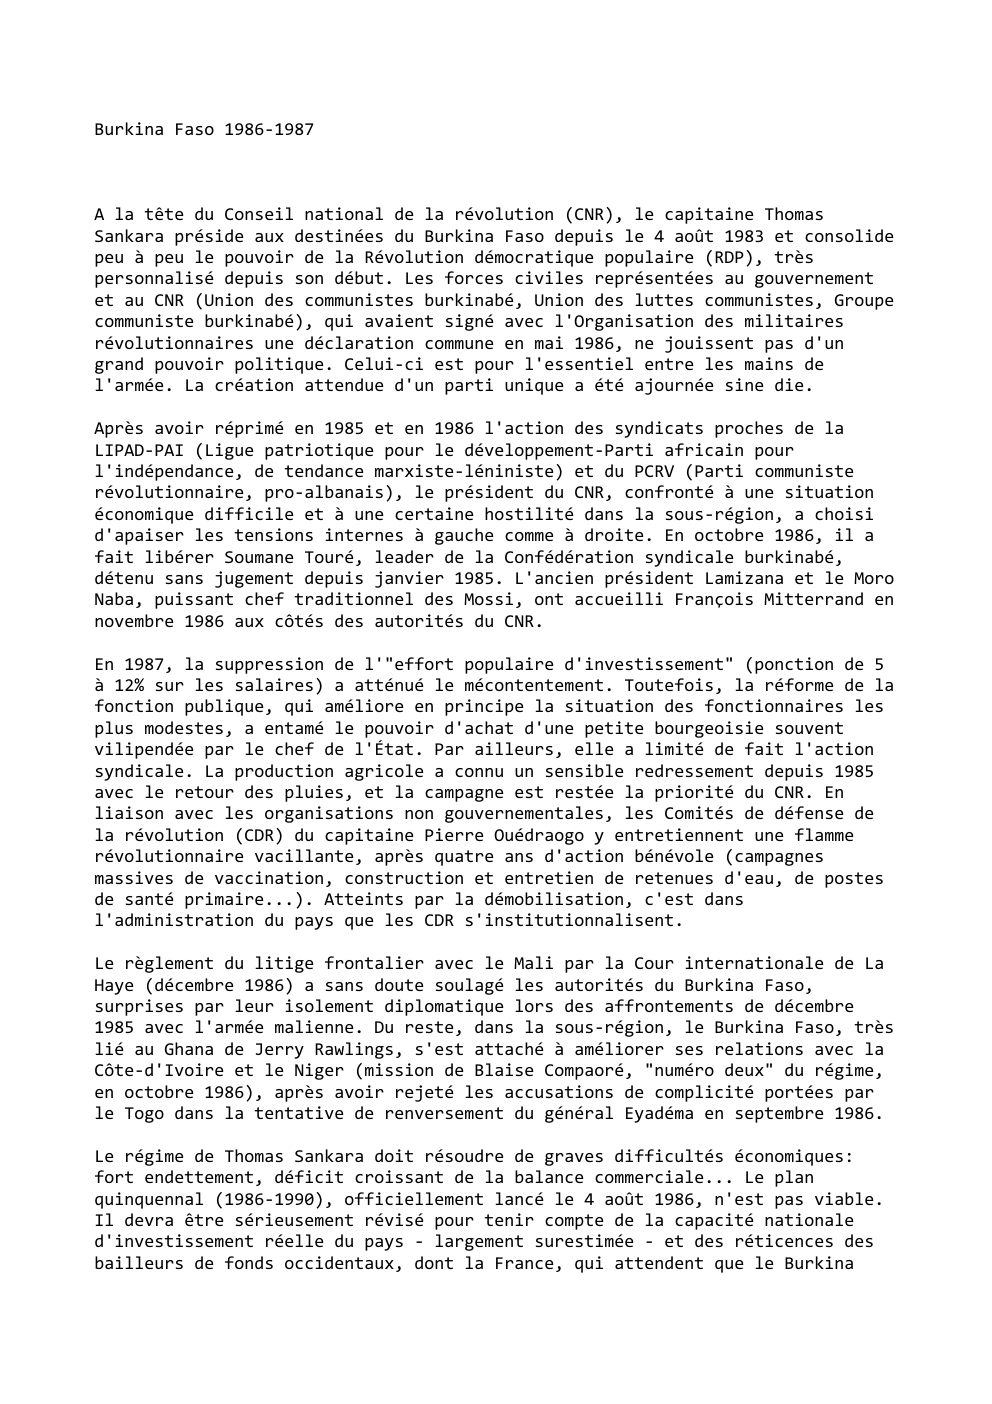 Prévisualisation du document Burkina Faso 1986-1987

A la tête du Conseil national de la révolution (CNR), le capitaine Thomas
Sankara préside aux destinées...